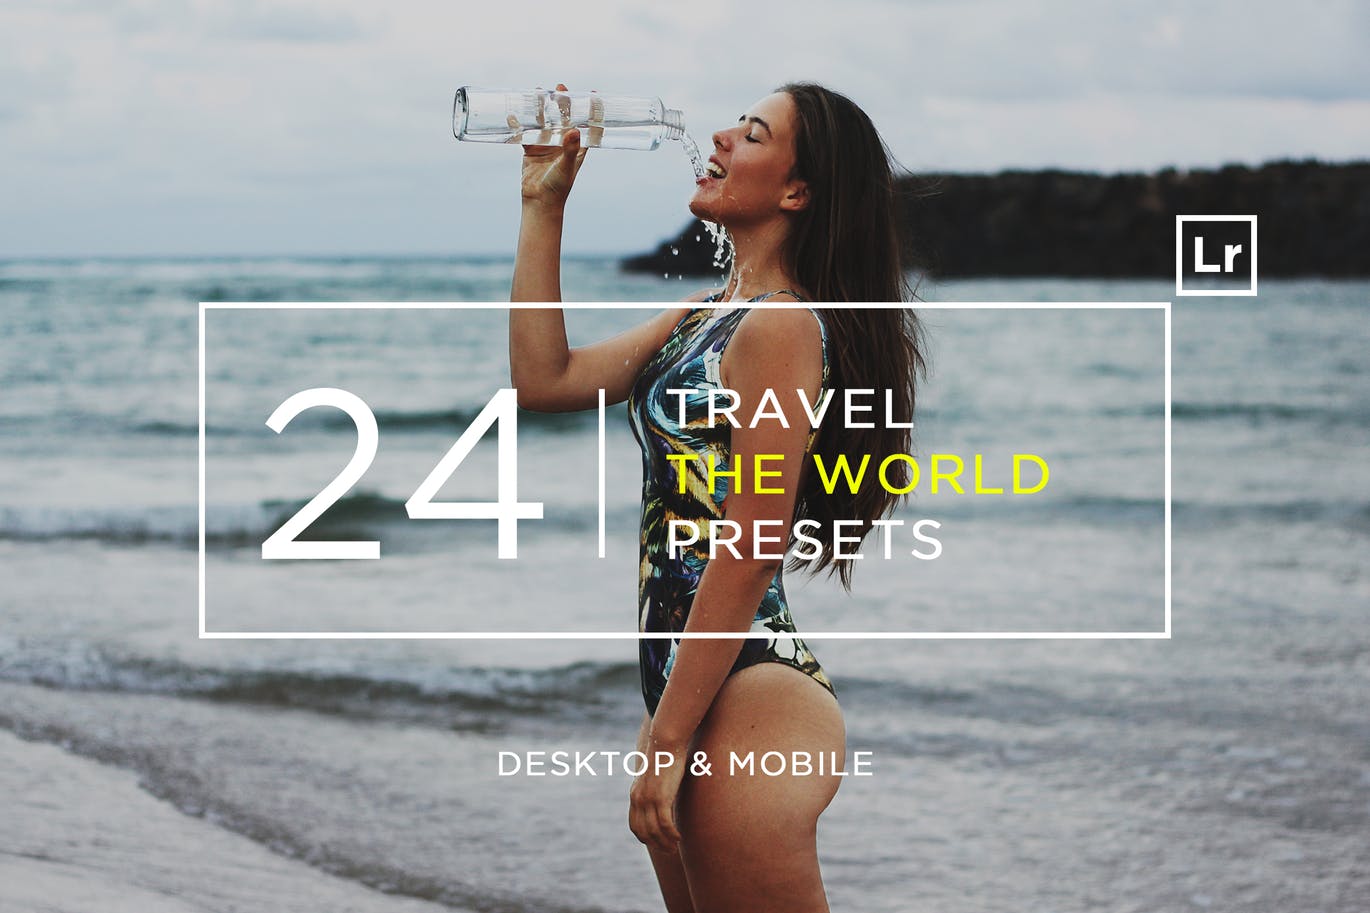 24款旅游摄影LR调色预设下载 24 Travel The World Lightroom Presets + Mobile插图